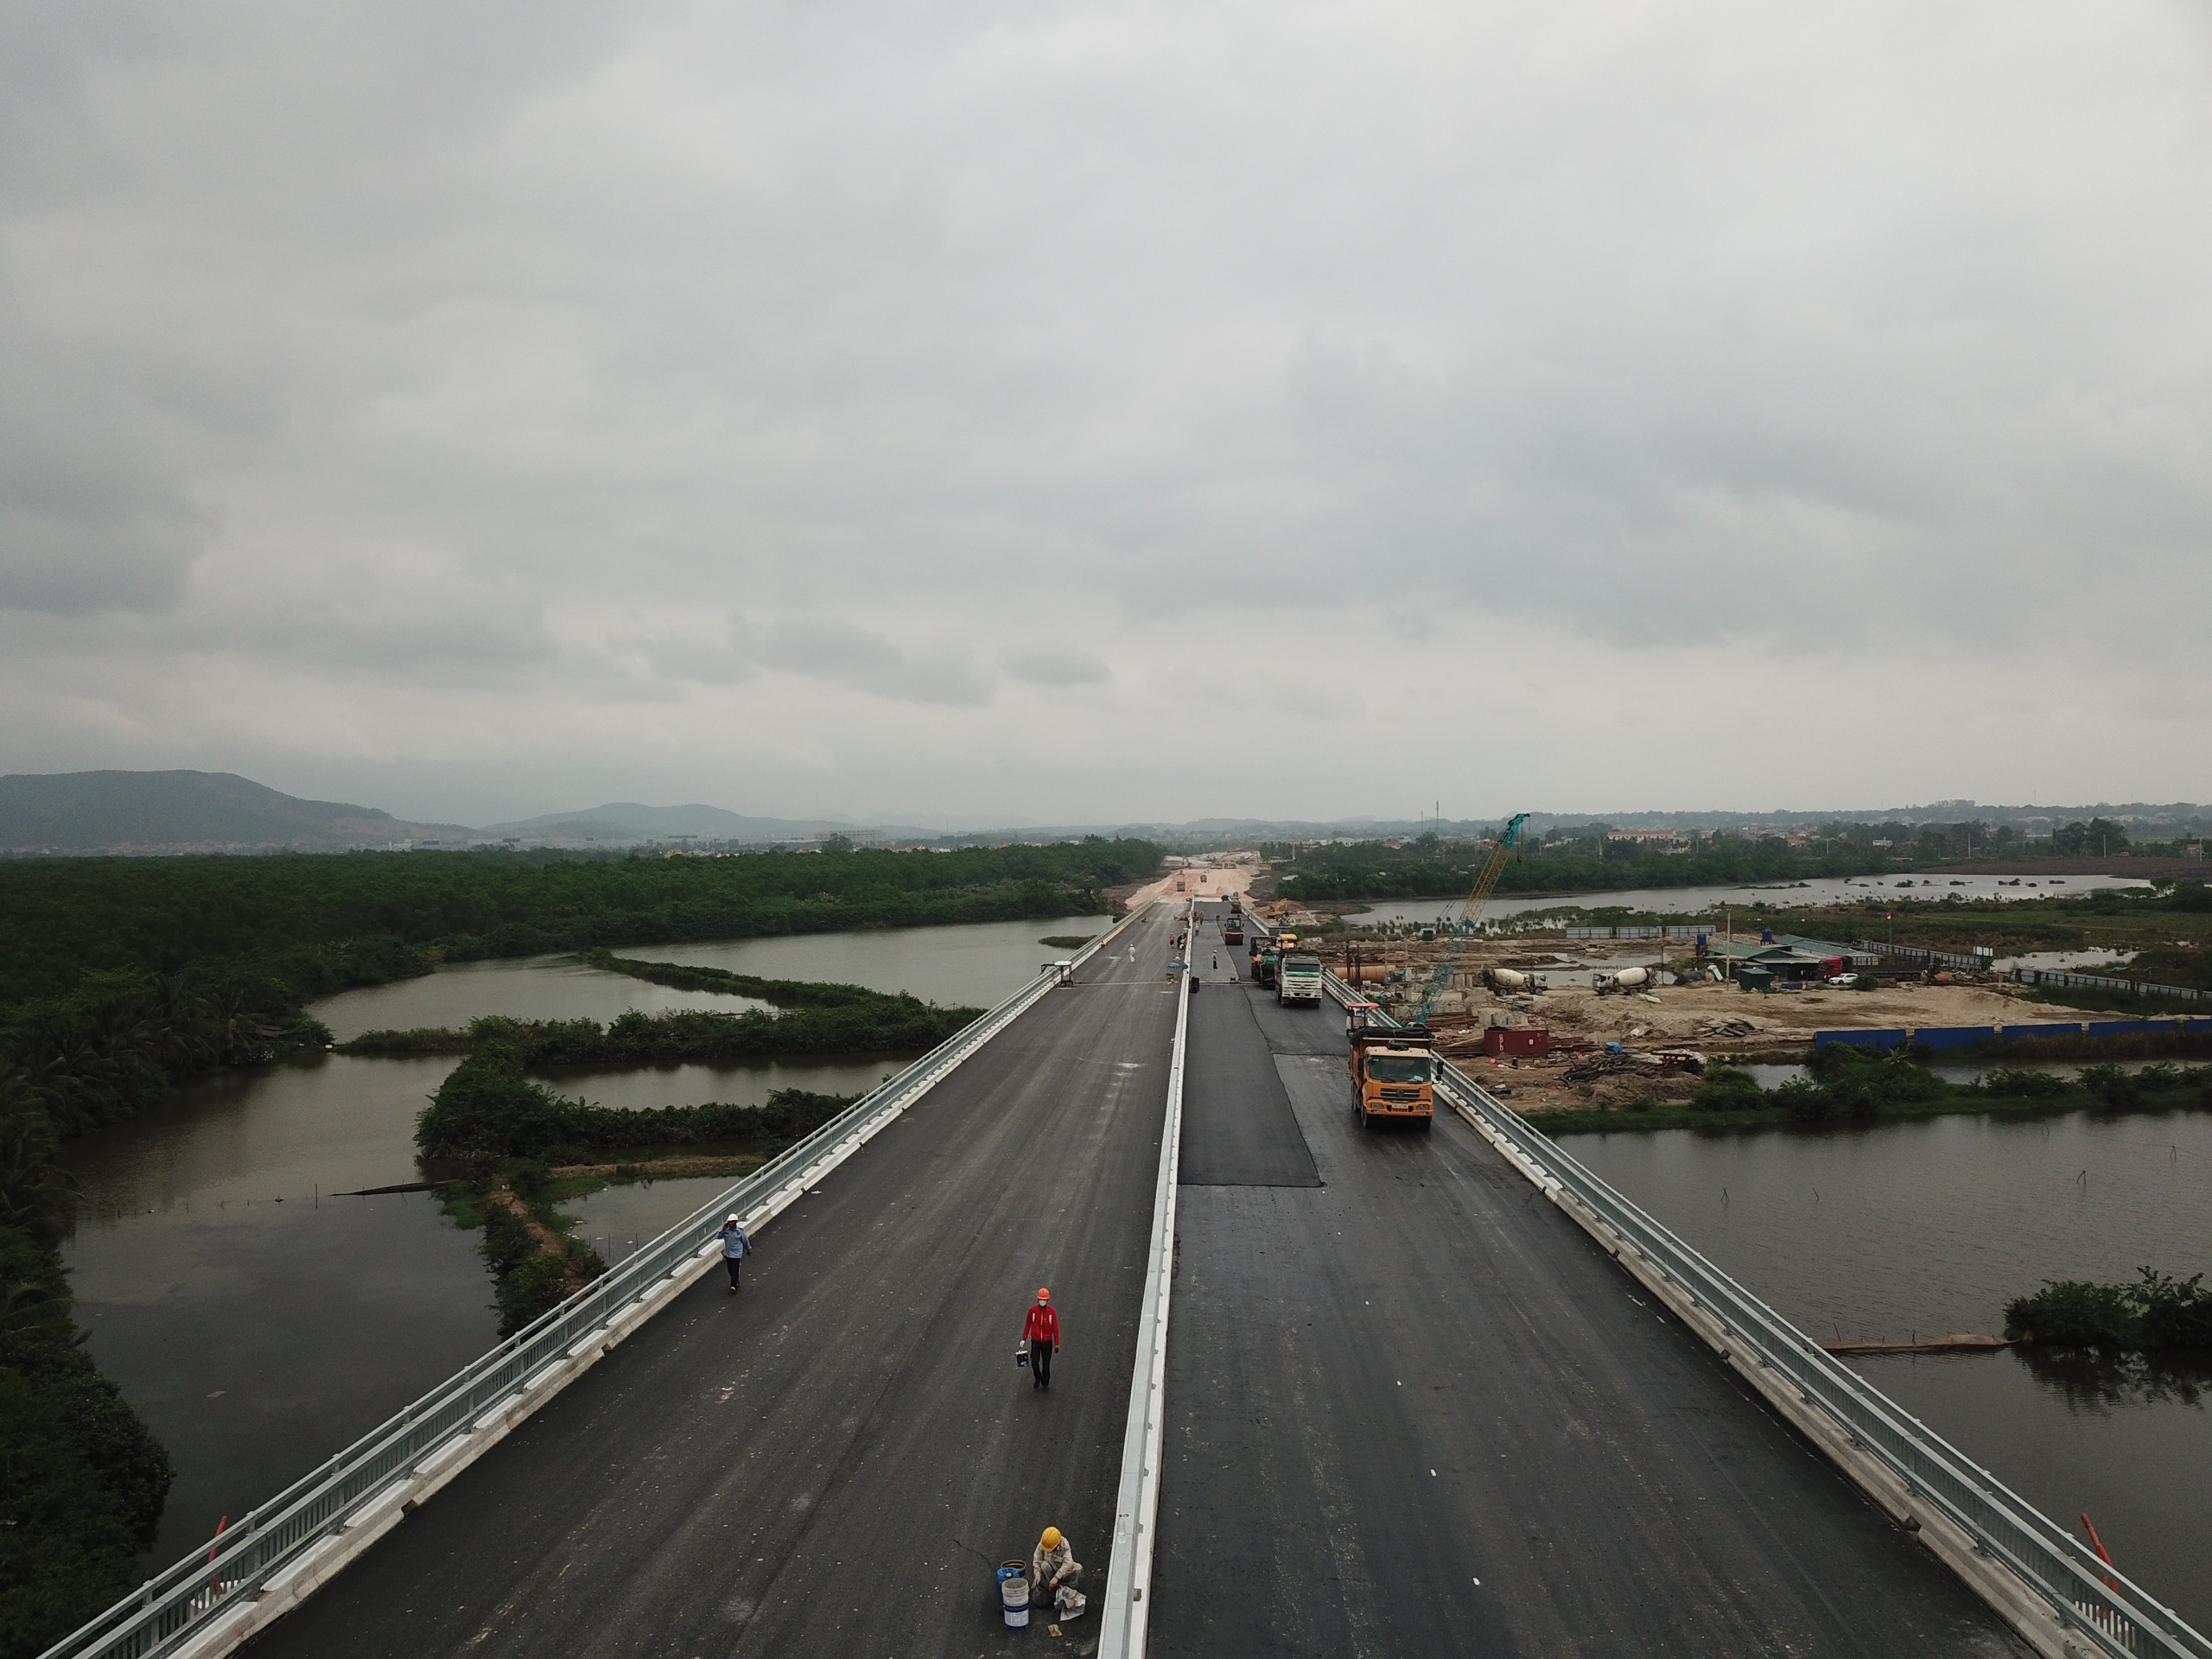 Dự án Đường dẫn cầu bến Rừng thuộc địa phận tỉnh Quảng Ninh dài 2,3 km và nút giao với tổng mức đầu tư 356 tỉ đồng sử dụng ngân sách tỉnh Quảng Ninh, dự kiến sẽ hoàn thành cùng với cầu Bến Rừng